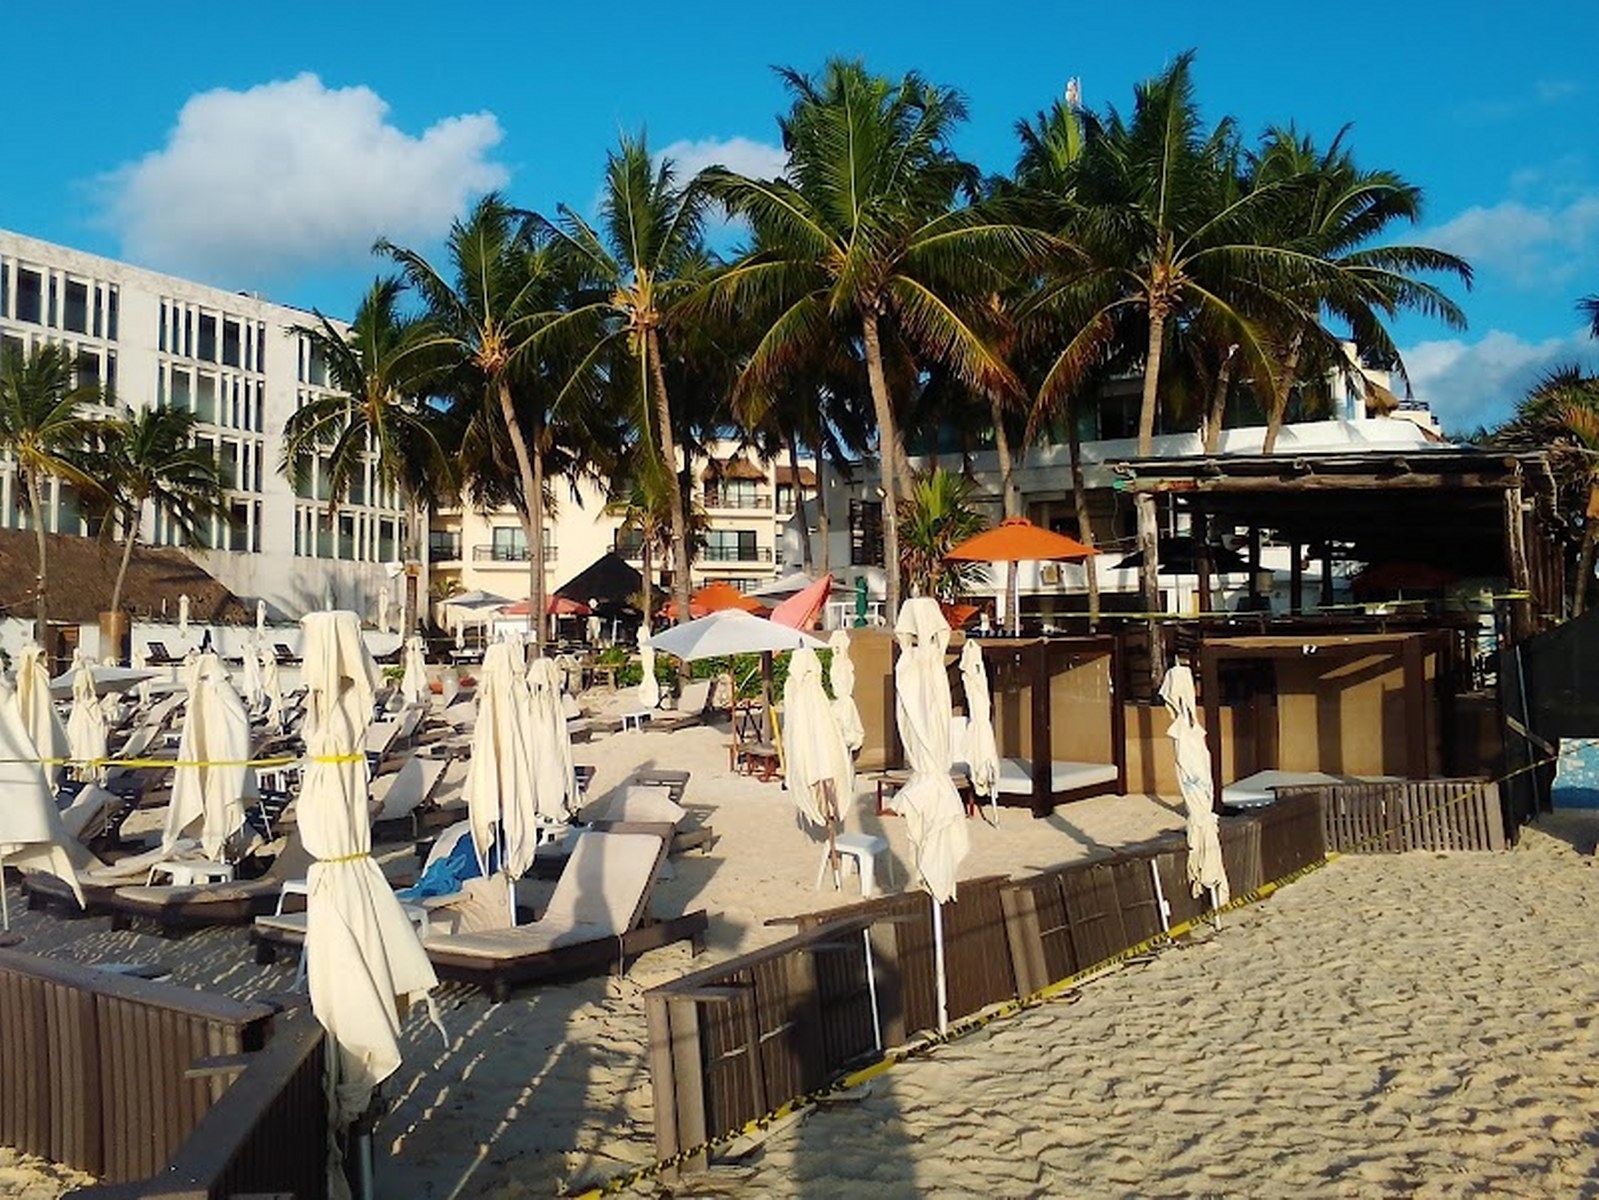 Kool Beach Club en Playa del Carmen: ¿Qué empresa está detrás de convertirlo en un hotel?